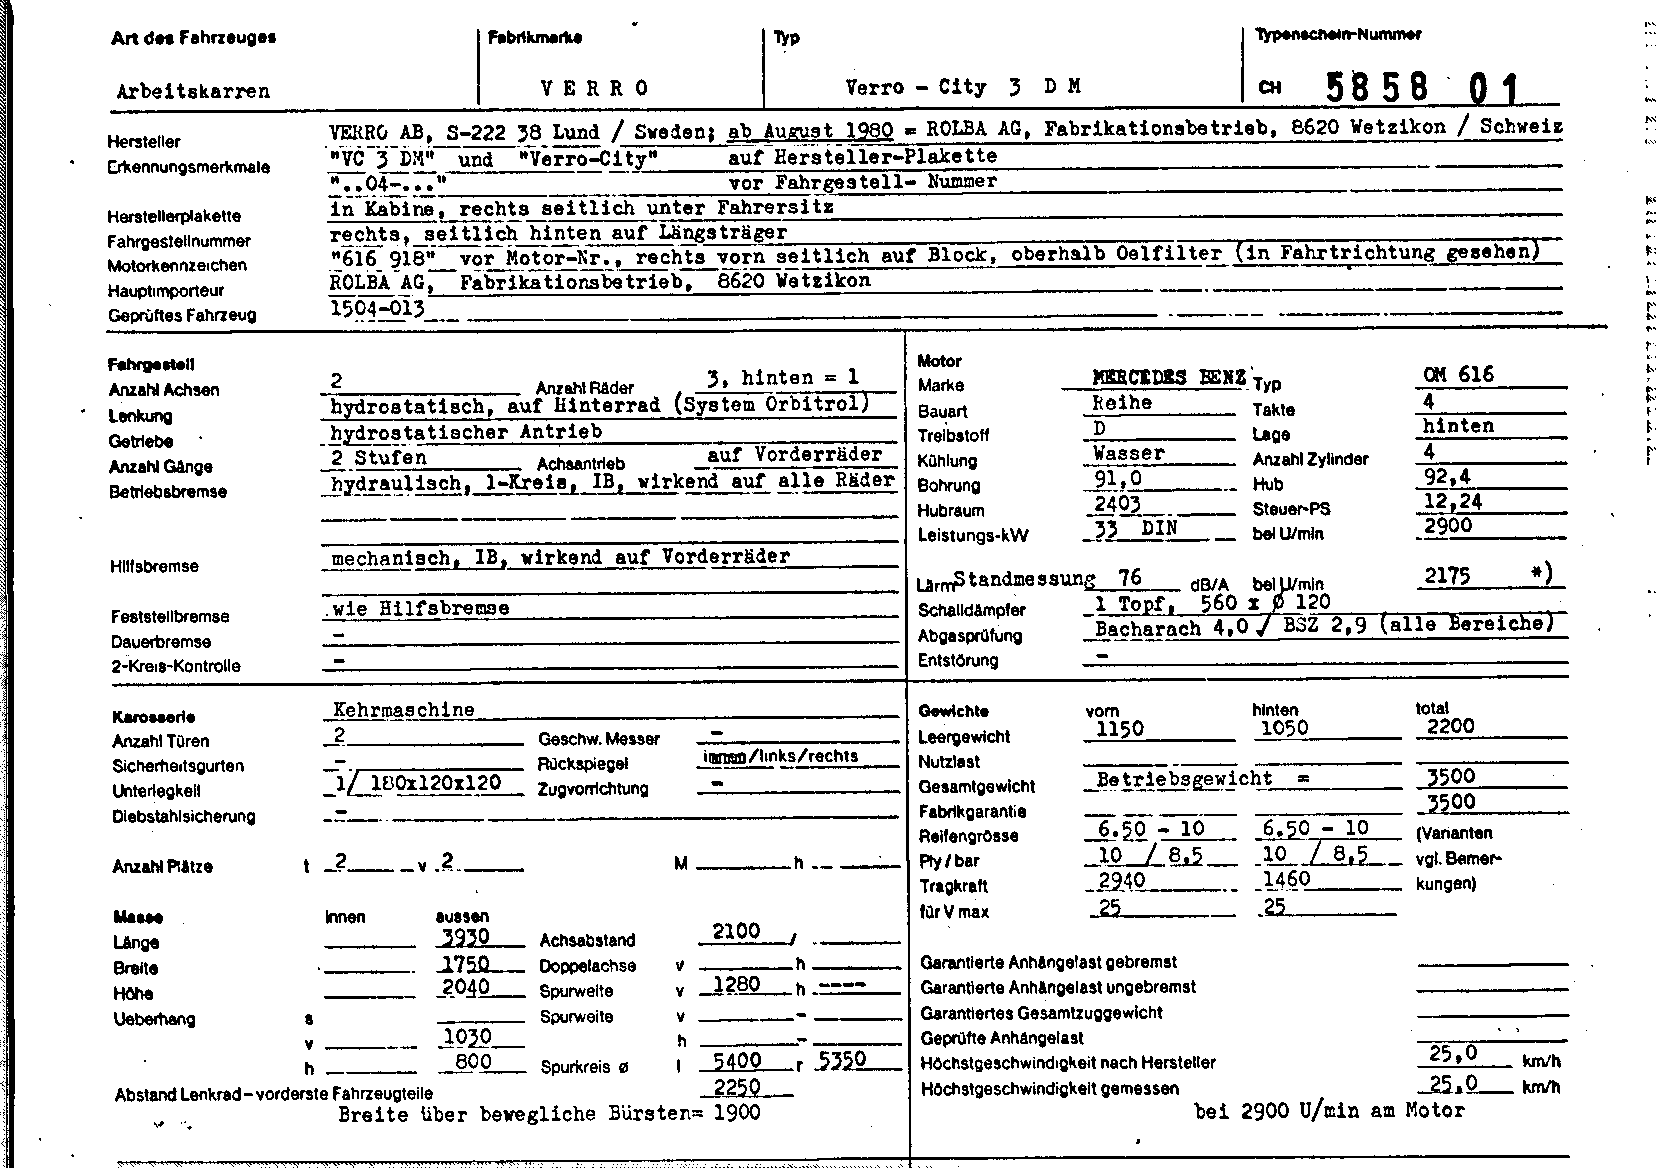 Swiss Certificate of Conformity 585801 German Page 1 (TG.DE.585801.1.png)